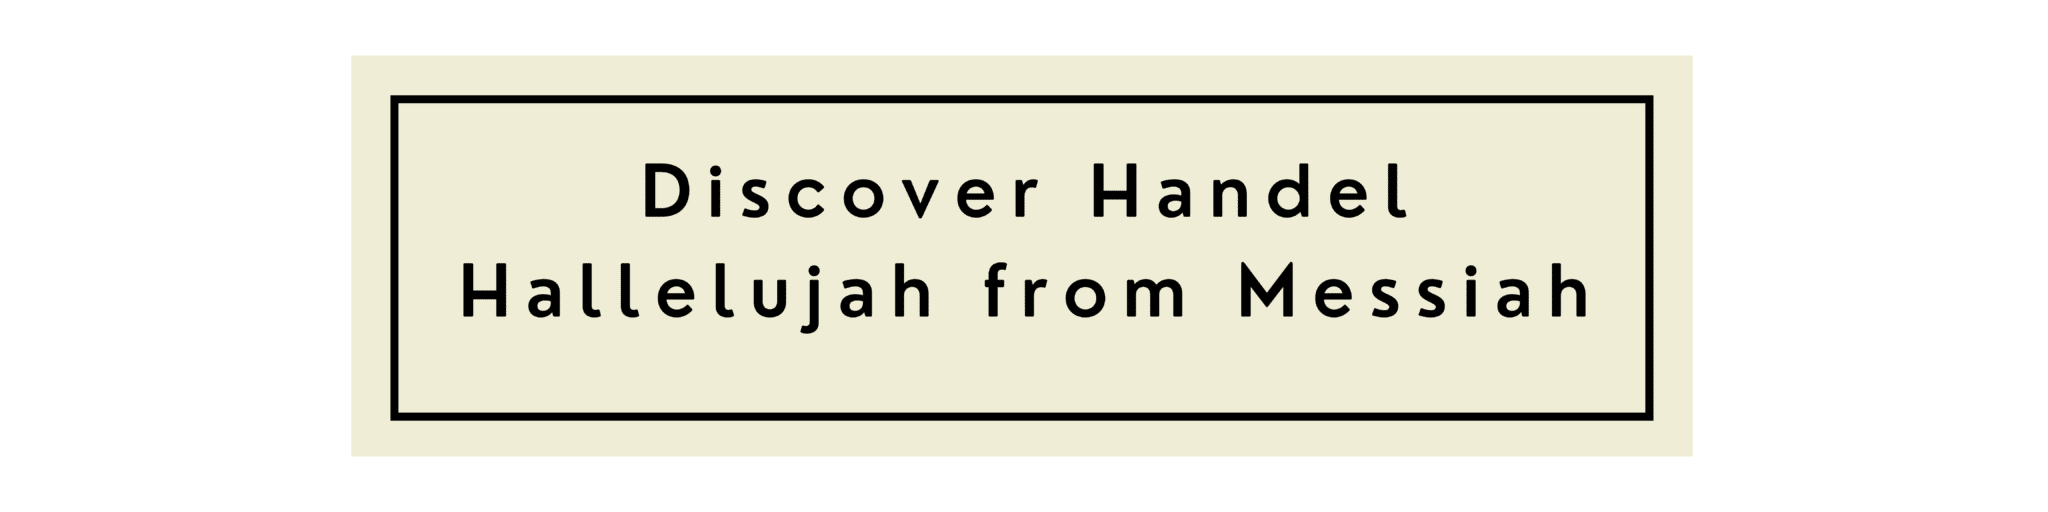 Discover Handel Hallelujah from Messiah